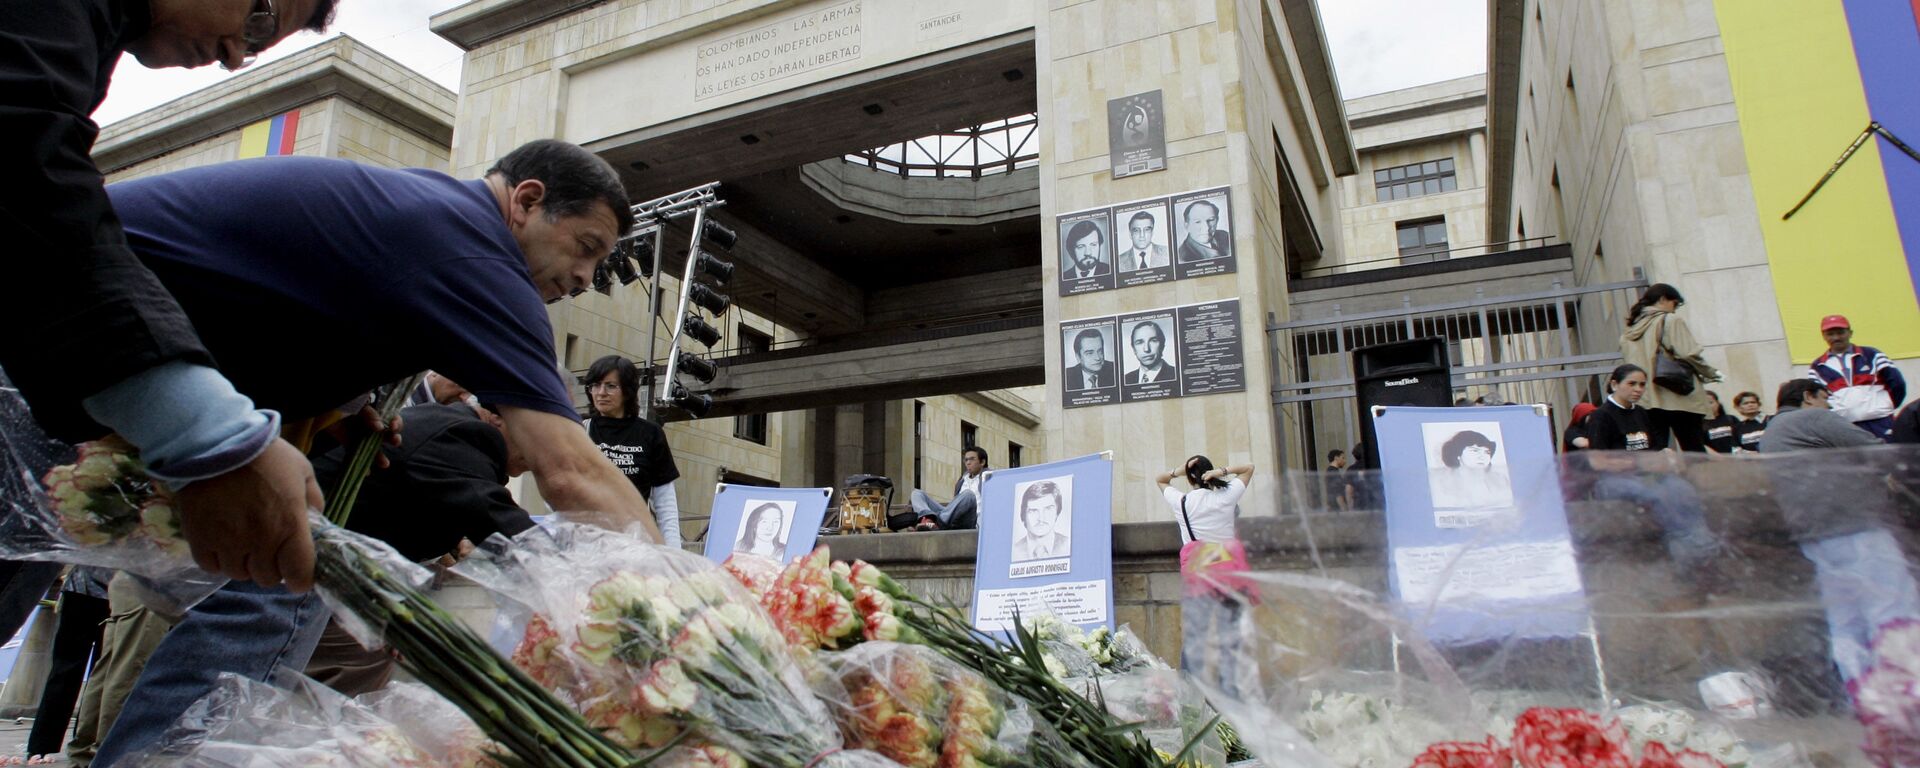 Homenaje a las víctimas de la toma del Palacio de Justicia en Colombia - Sputnik Mundo, 1920, 05.11.2020